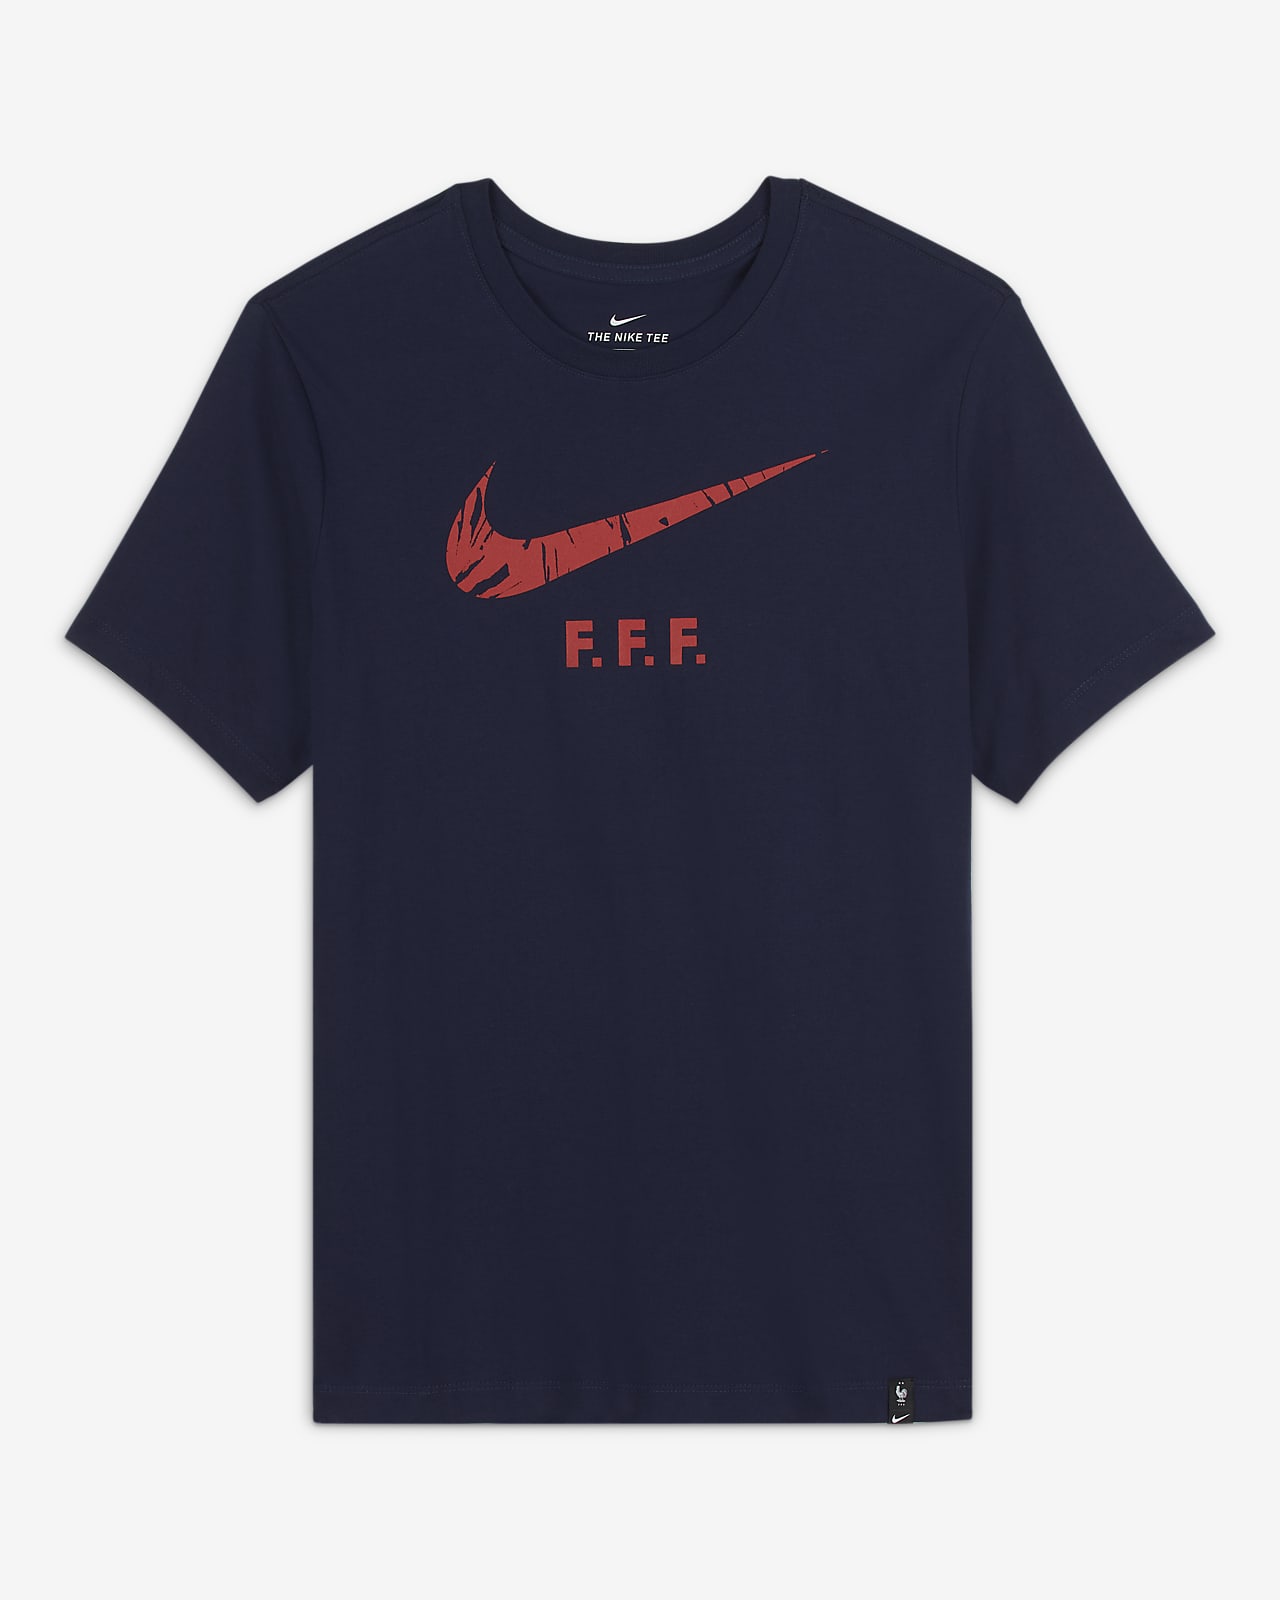 fff nike shirt